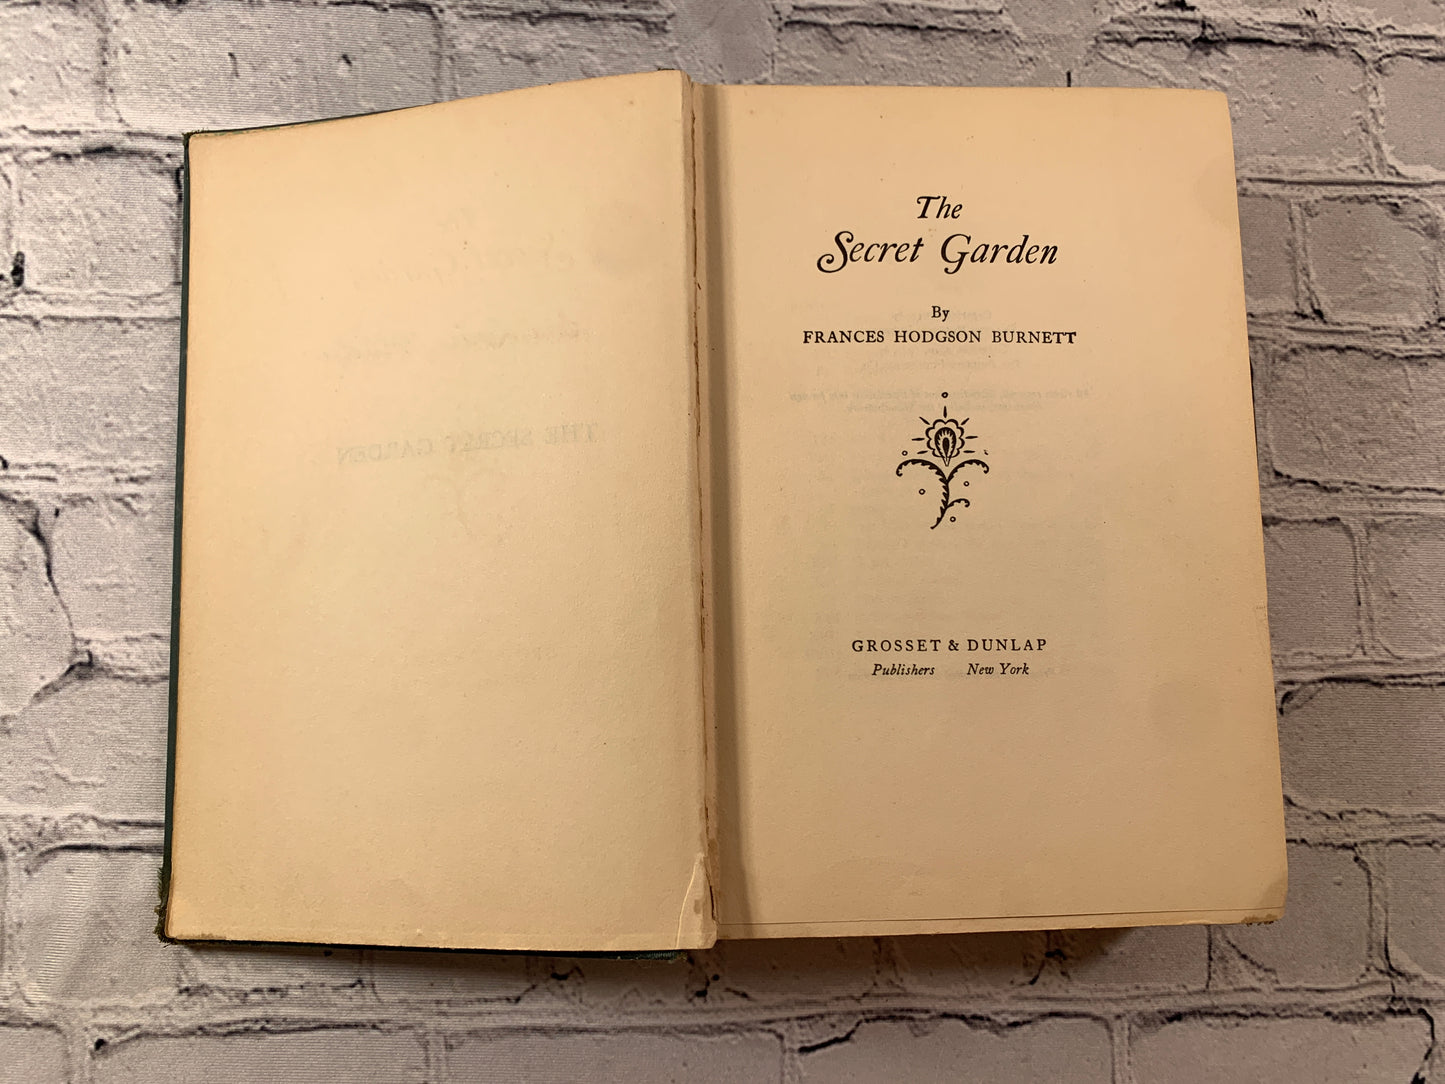 The Secret Garden by Frances Hodson Burnett [1911]